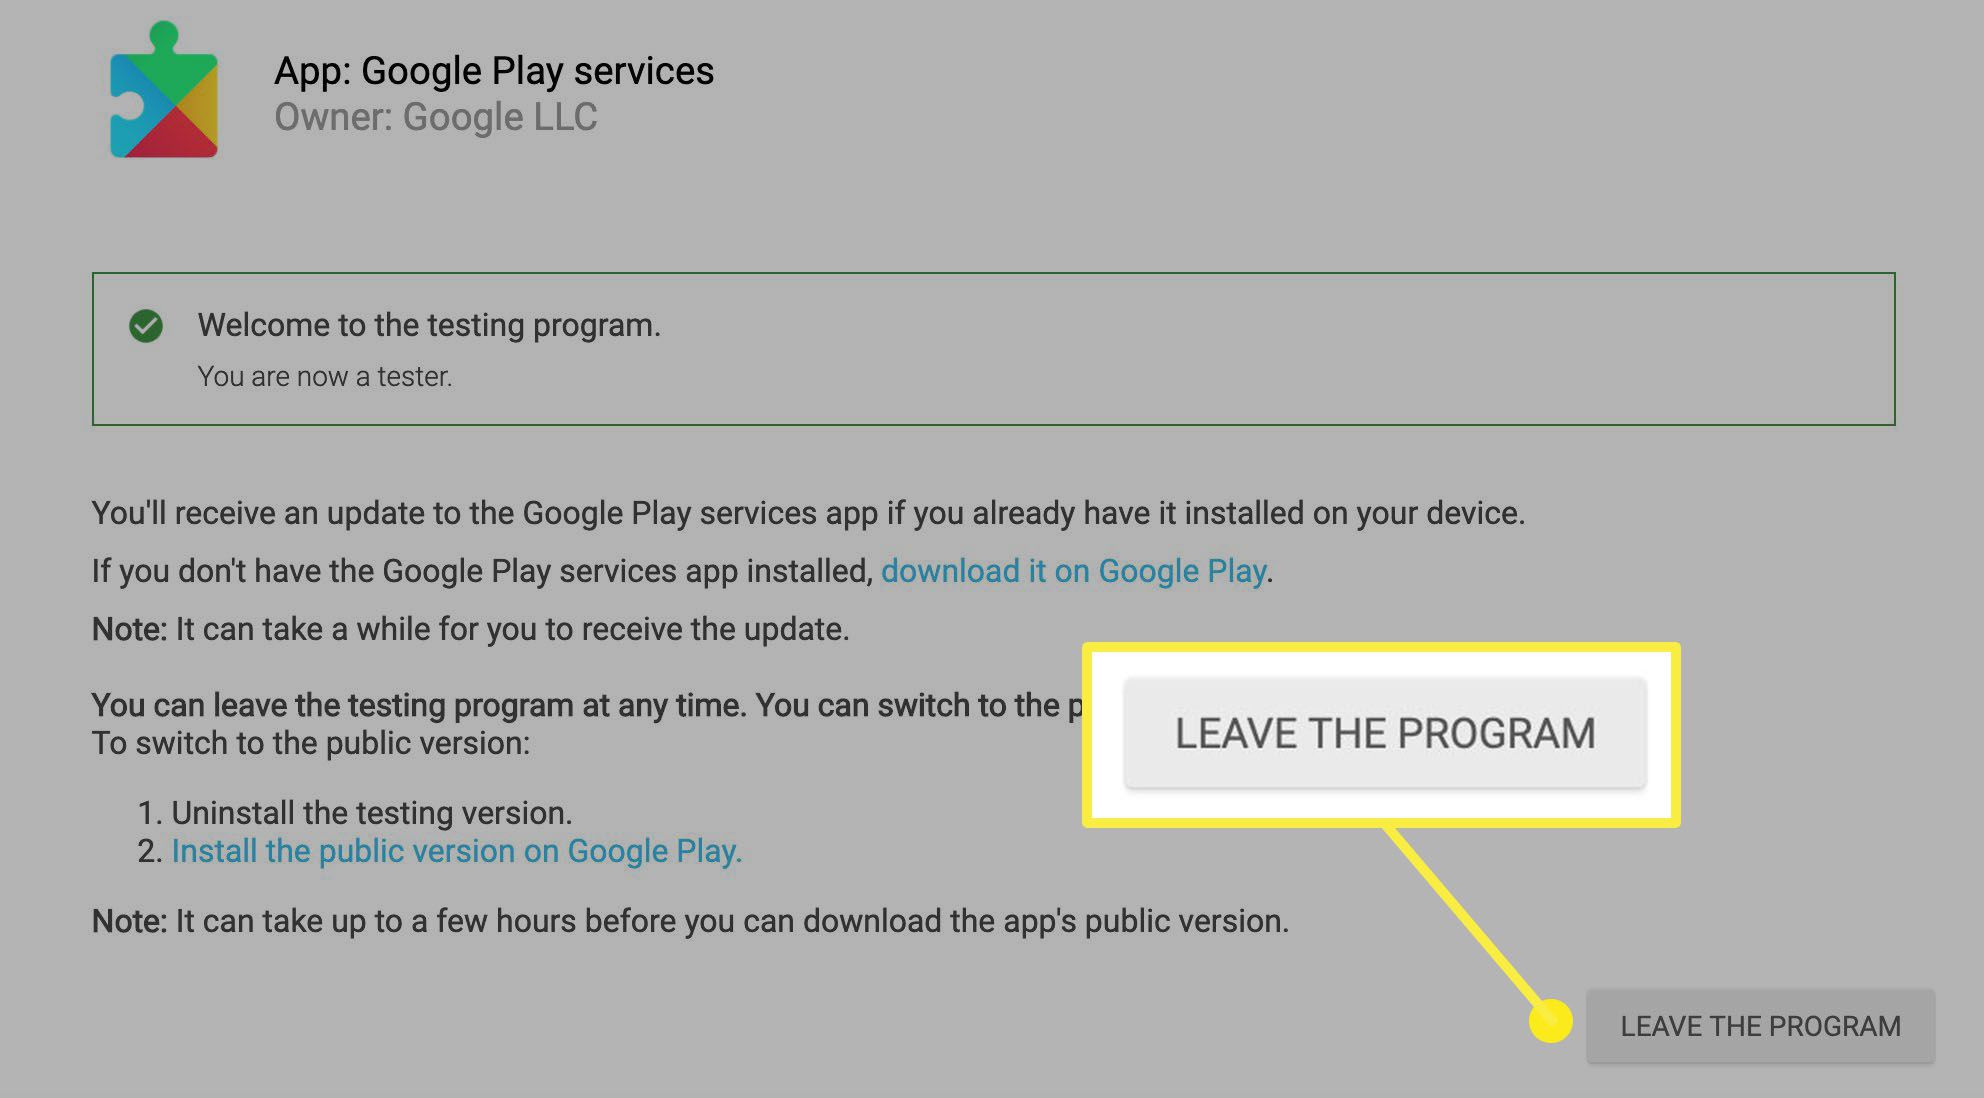 De knop om te klikken om het testprogramma in Google Play te verlaten.